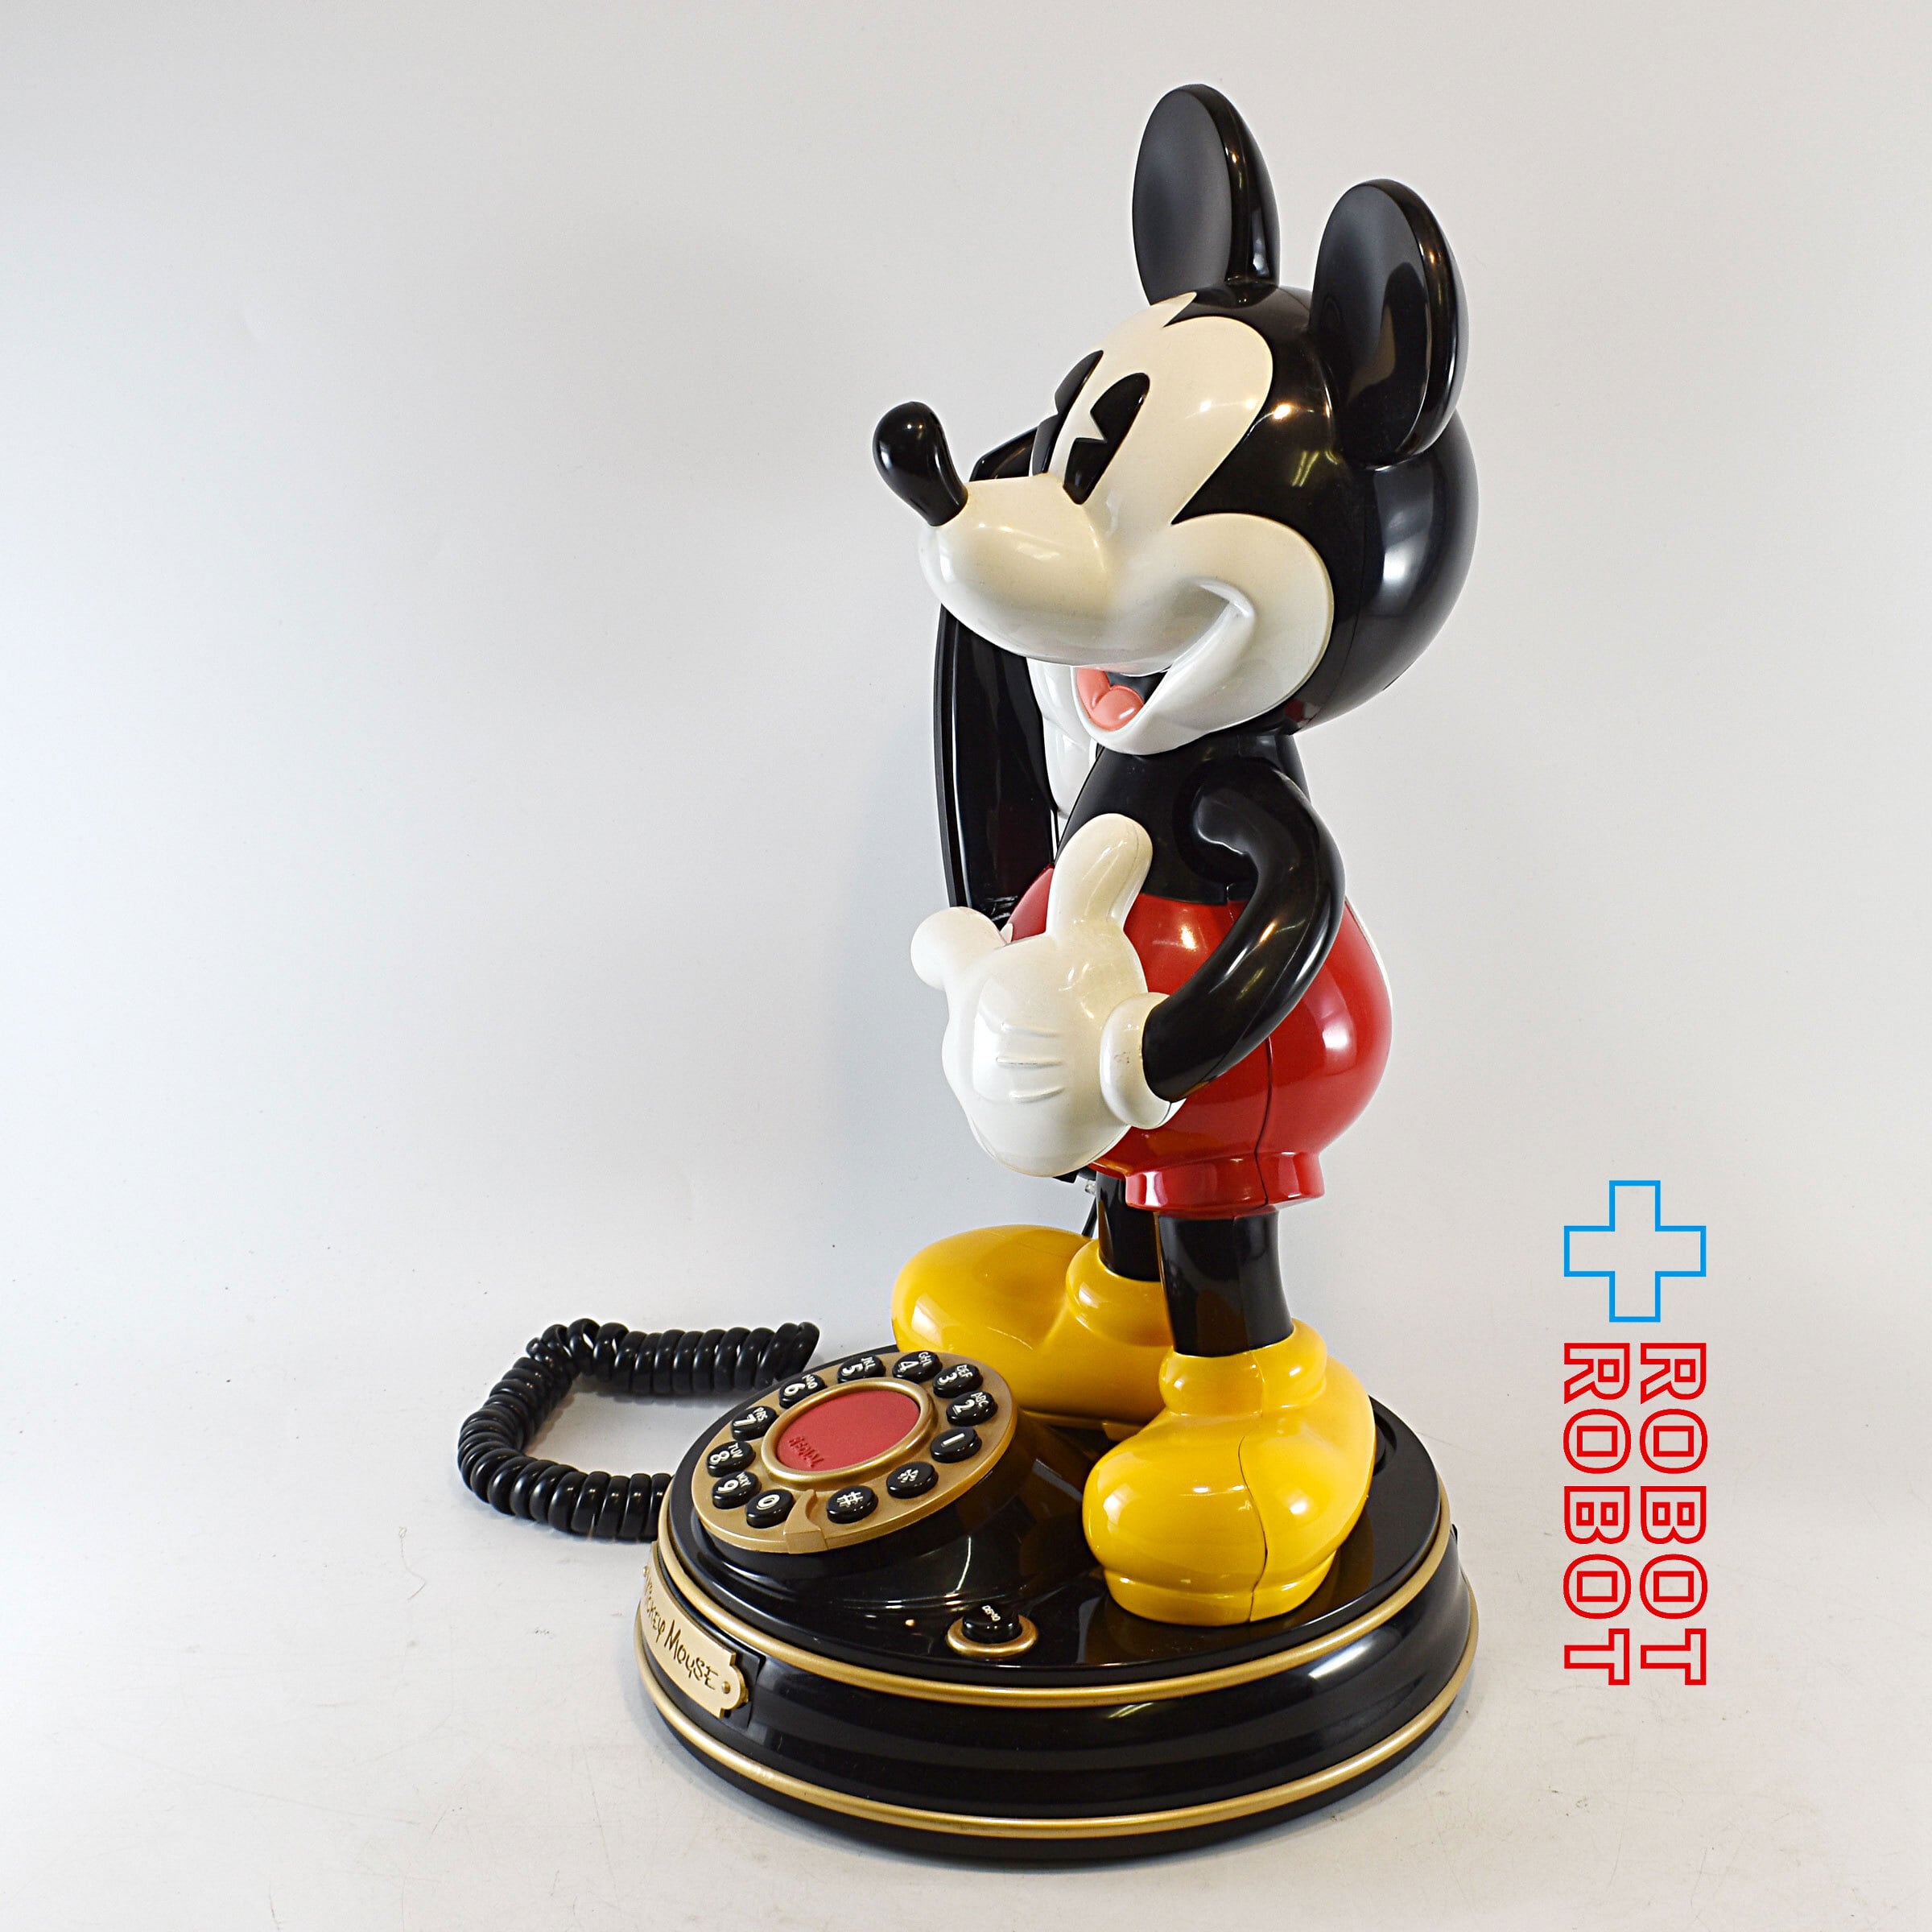 ミッキーマウスの電話機 Walt Disney40年前に購入したものです 